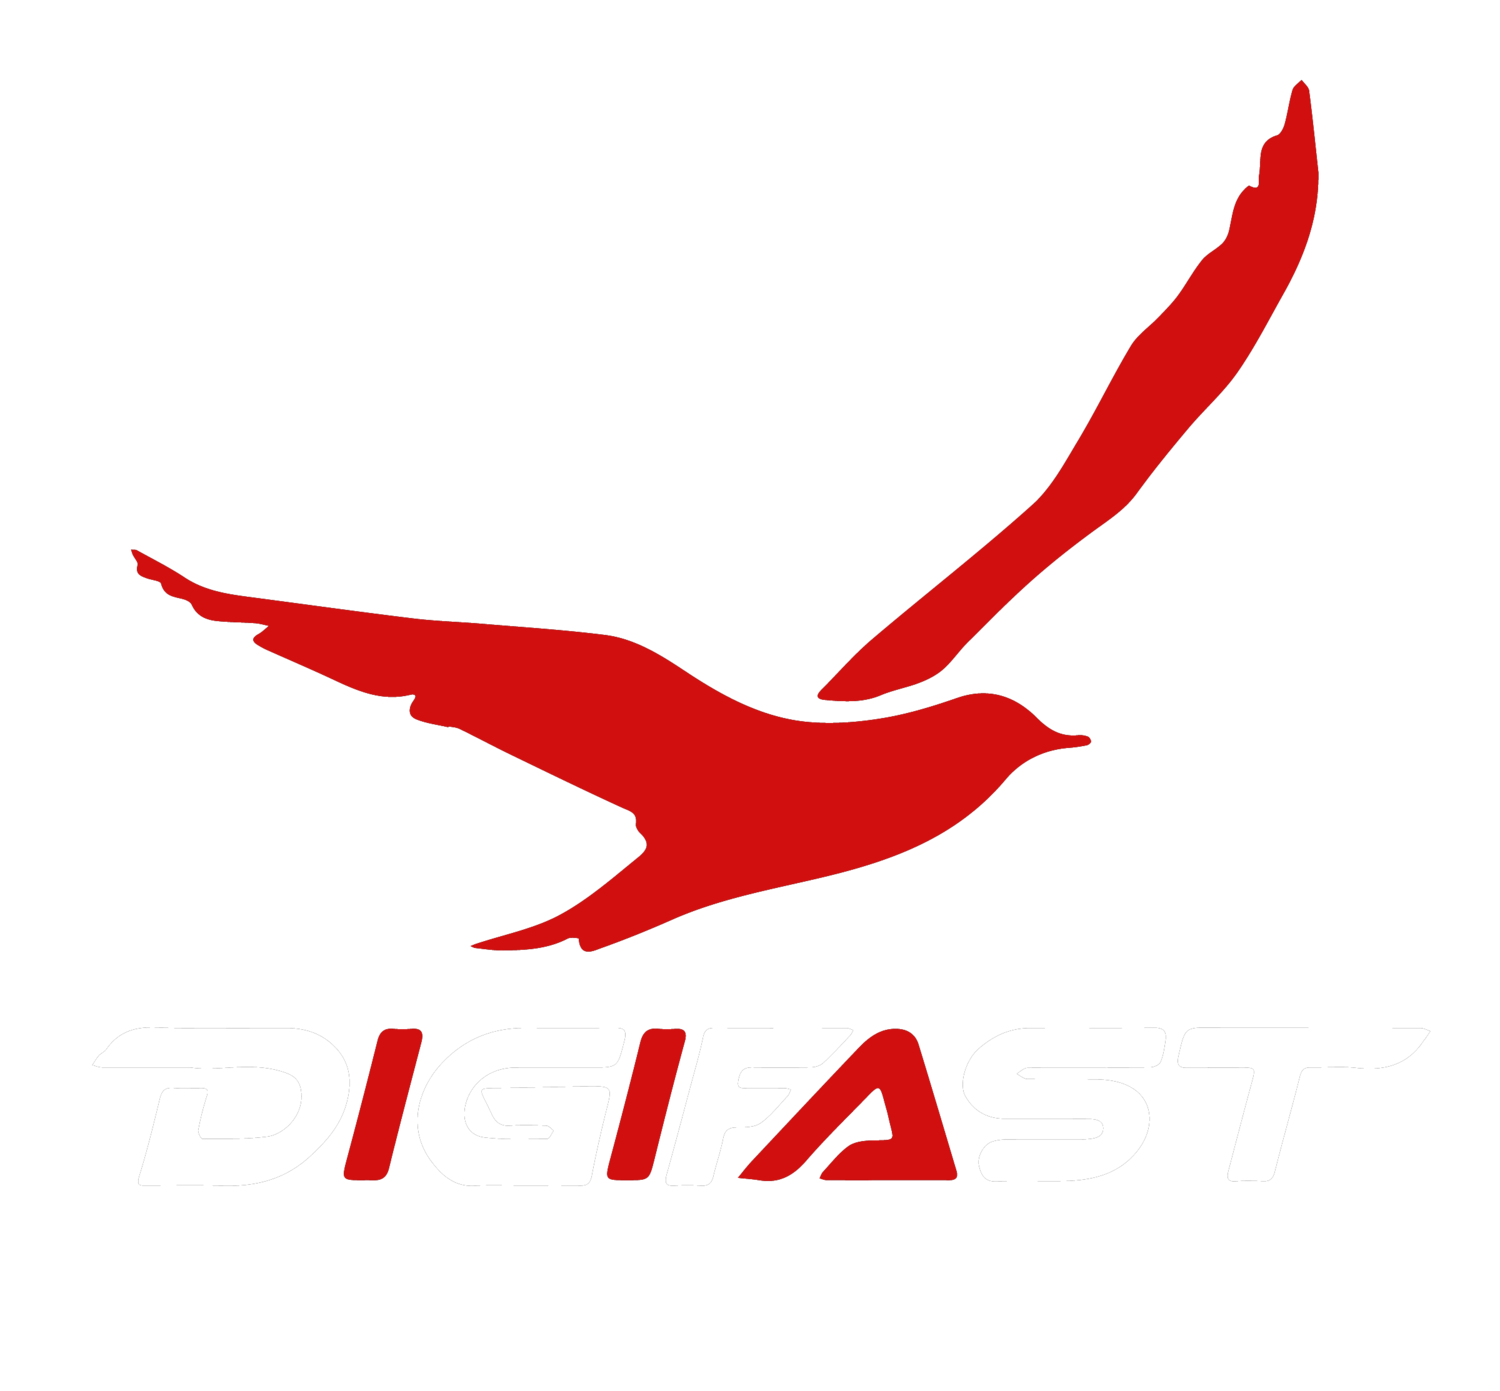 DigiFast